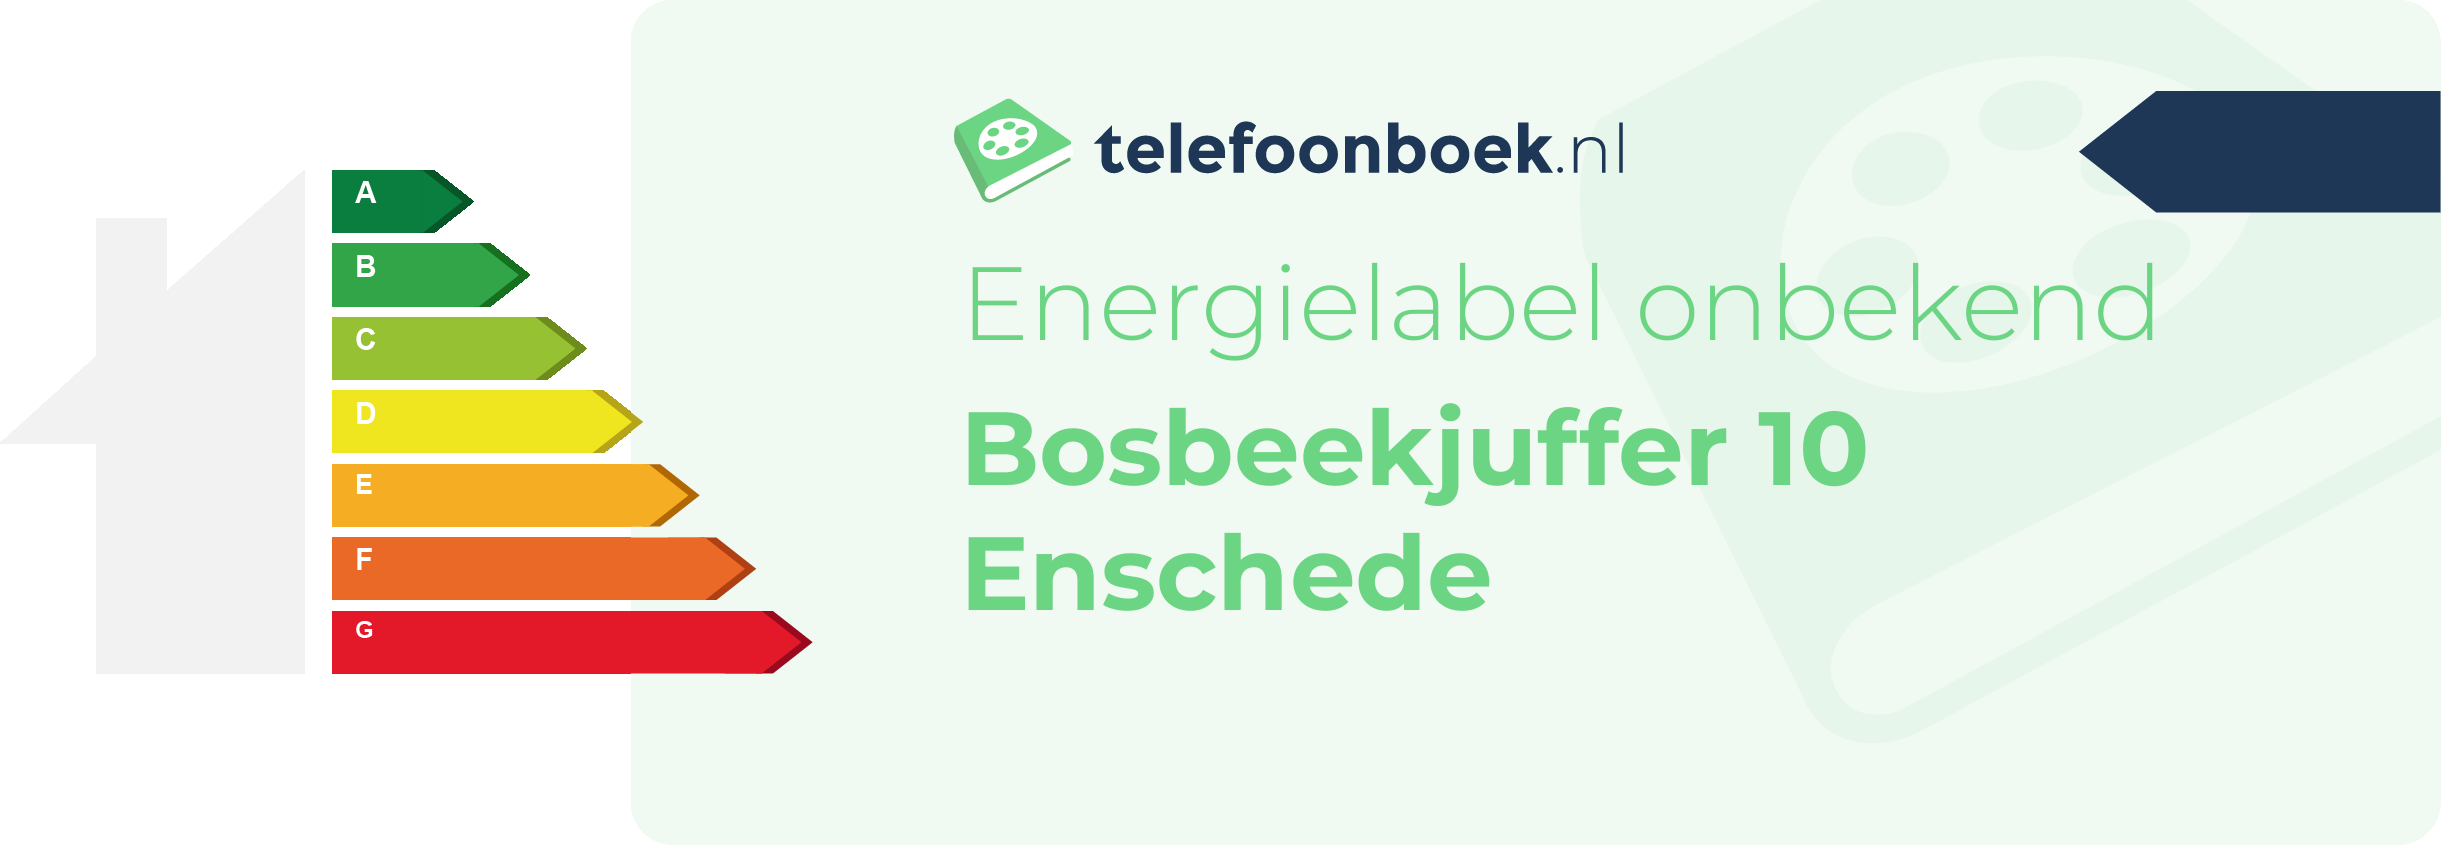 Energielabel Bosbeekjuffer 10 Enschede